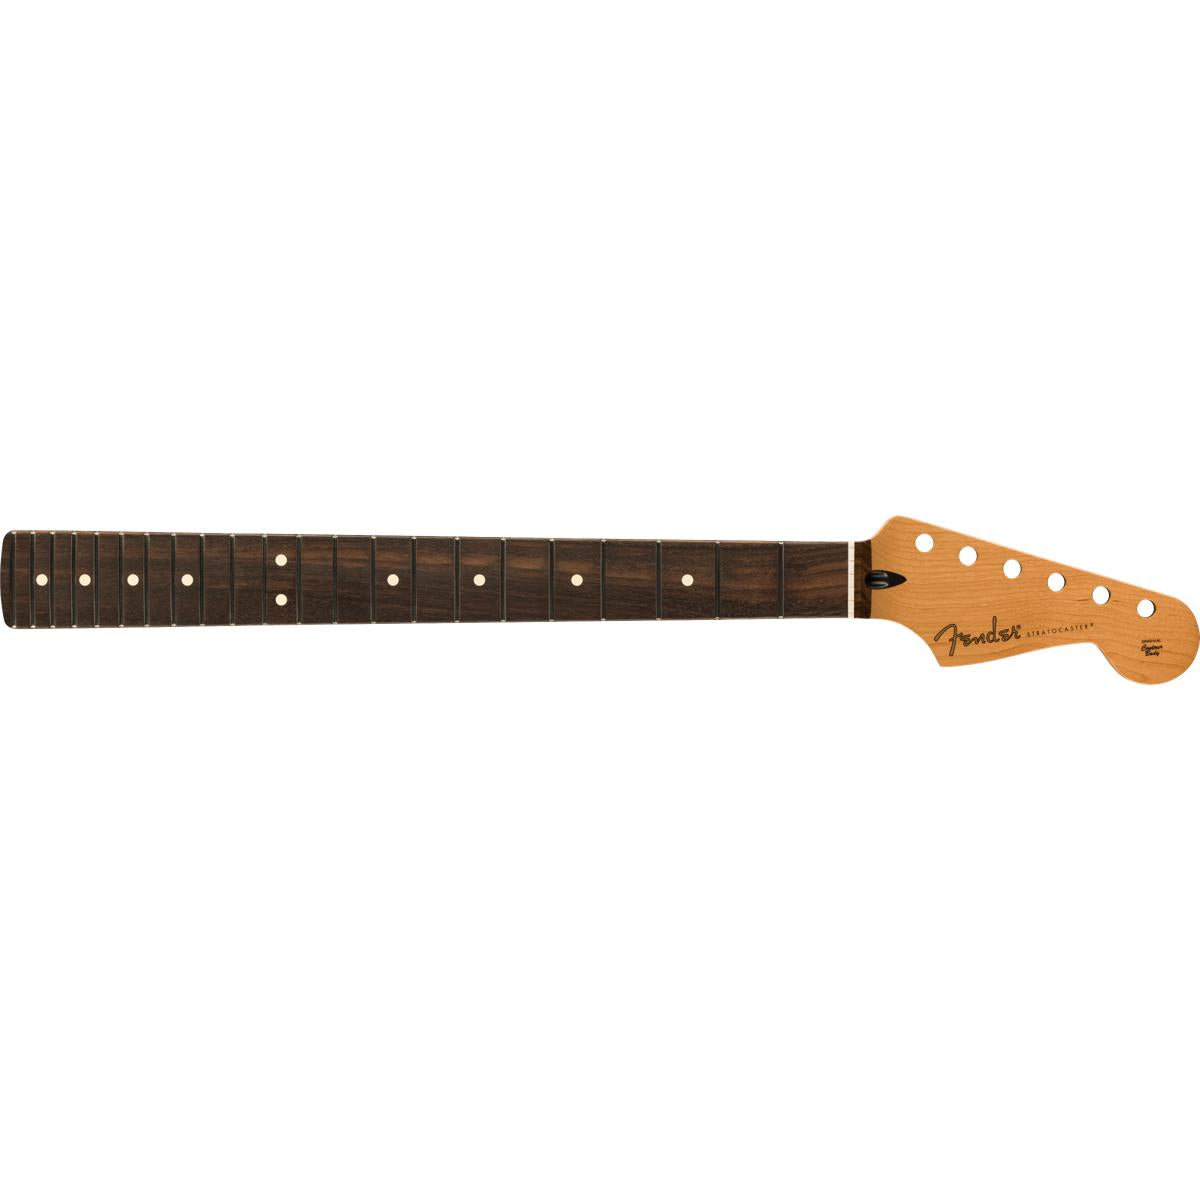 Fender Satin Roasted Maple Stratocaster Neck 22 Jumbo Frets 12inch Radius Rosewood Flat Oval Shape - 0990493920